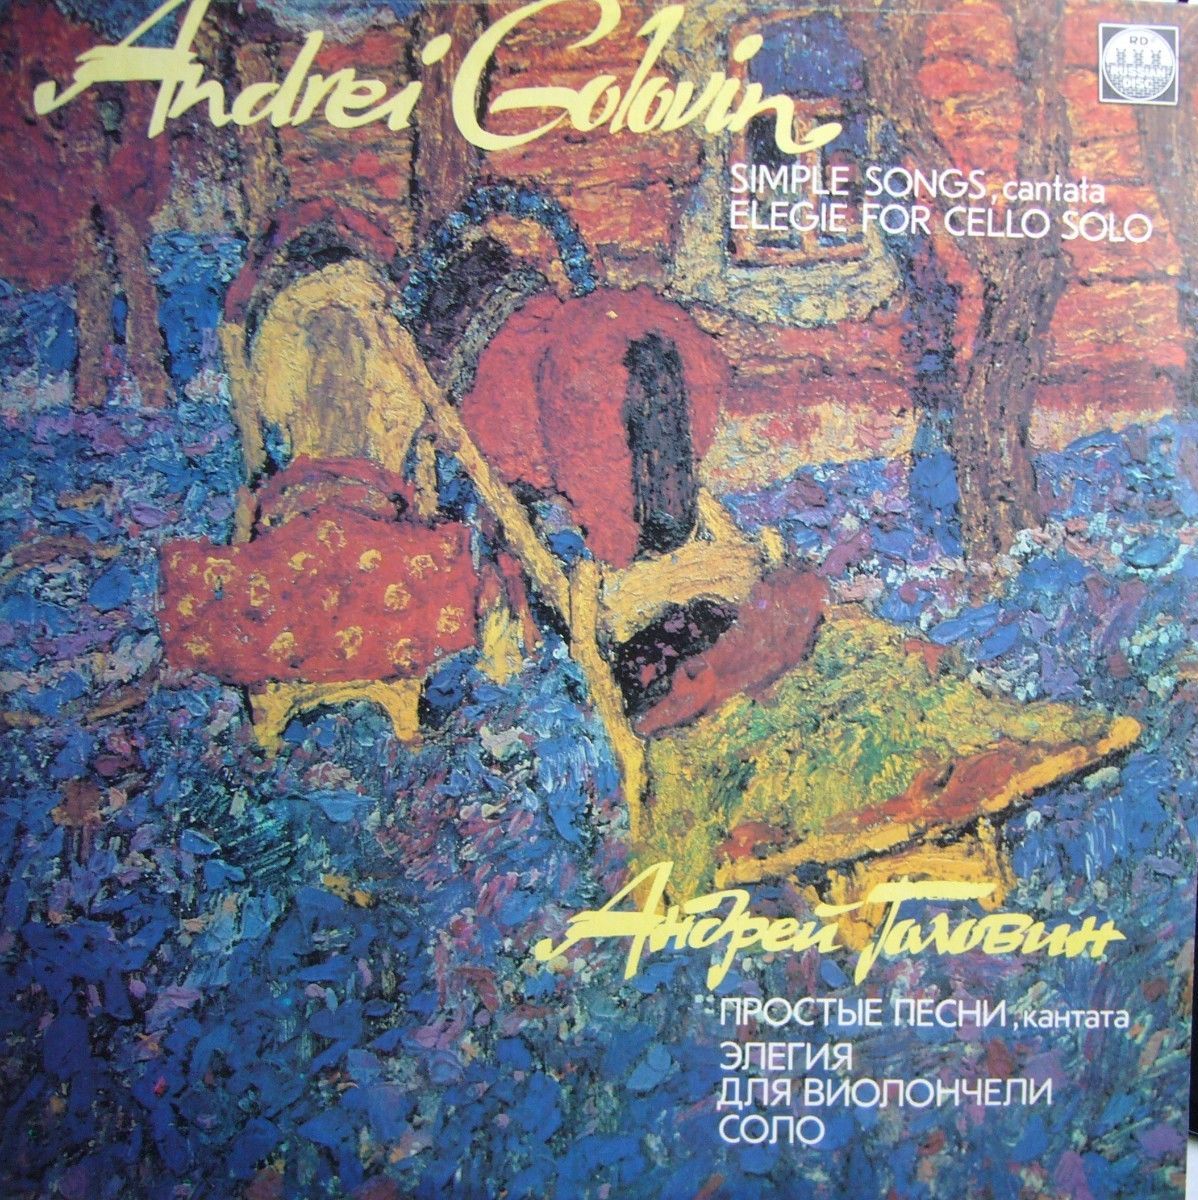 Андрей Головин - Простые песни, кантата. Элегия для виолончели соло